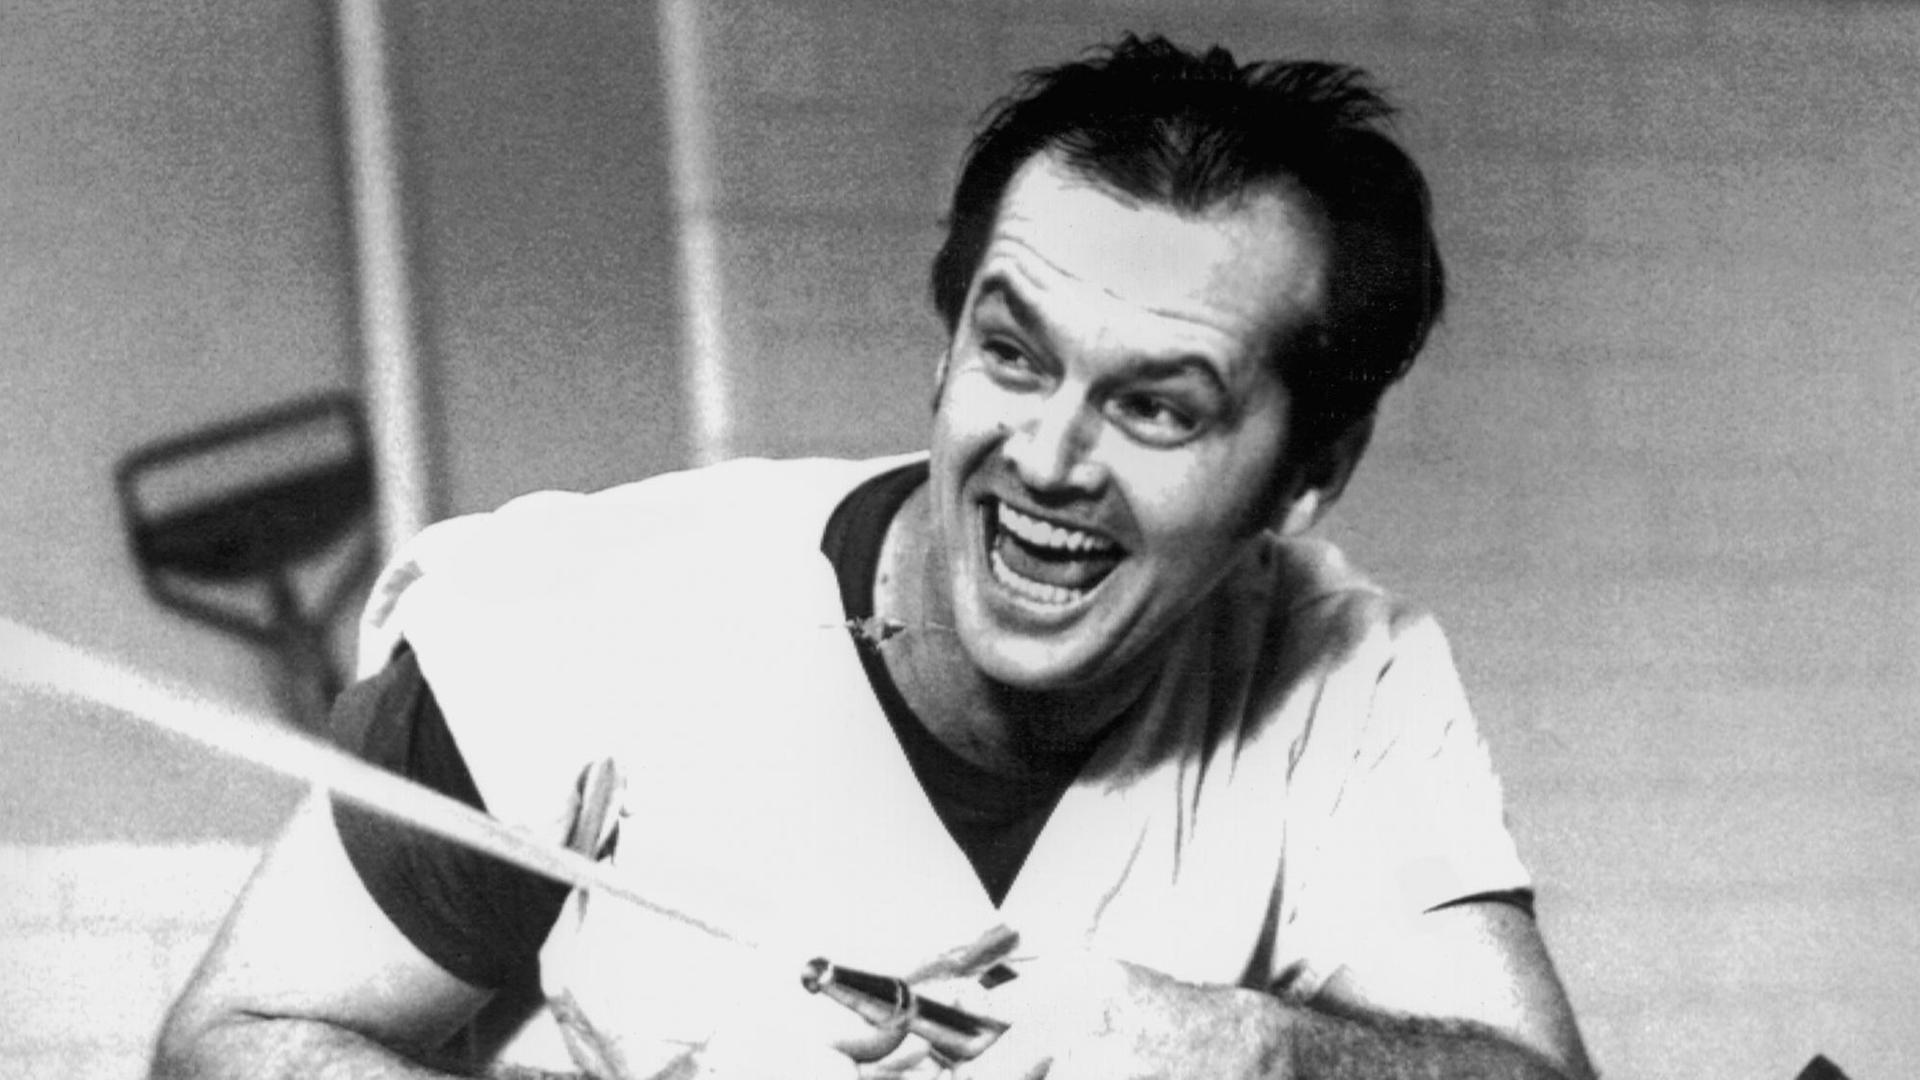 Der amerikanische Schauspieler Jack Nicholson in seiner Glanzrolle als Insasse einer Nervenheilanstalt in dem Film "Einer flog über das Kuckucksnest" aus dem Jahre 1975.